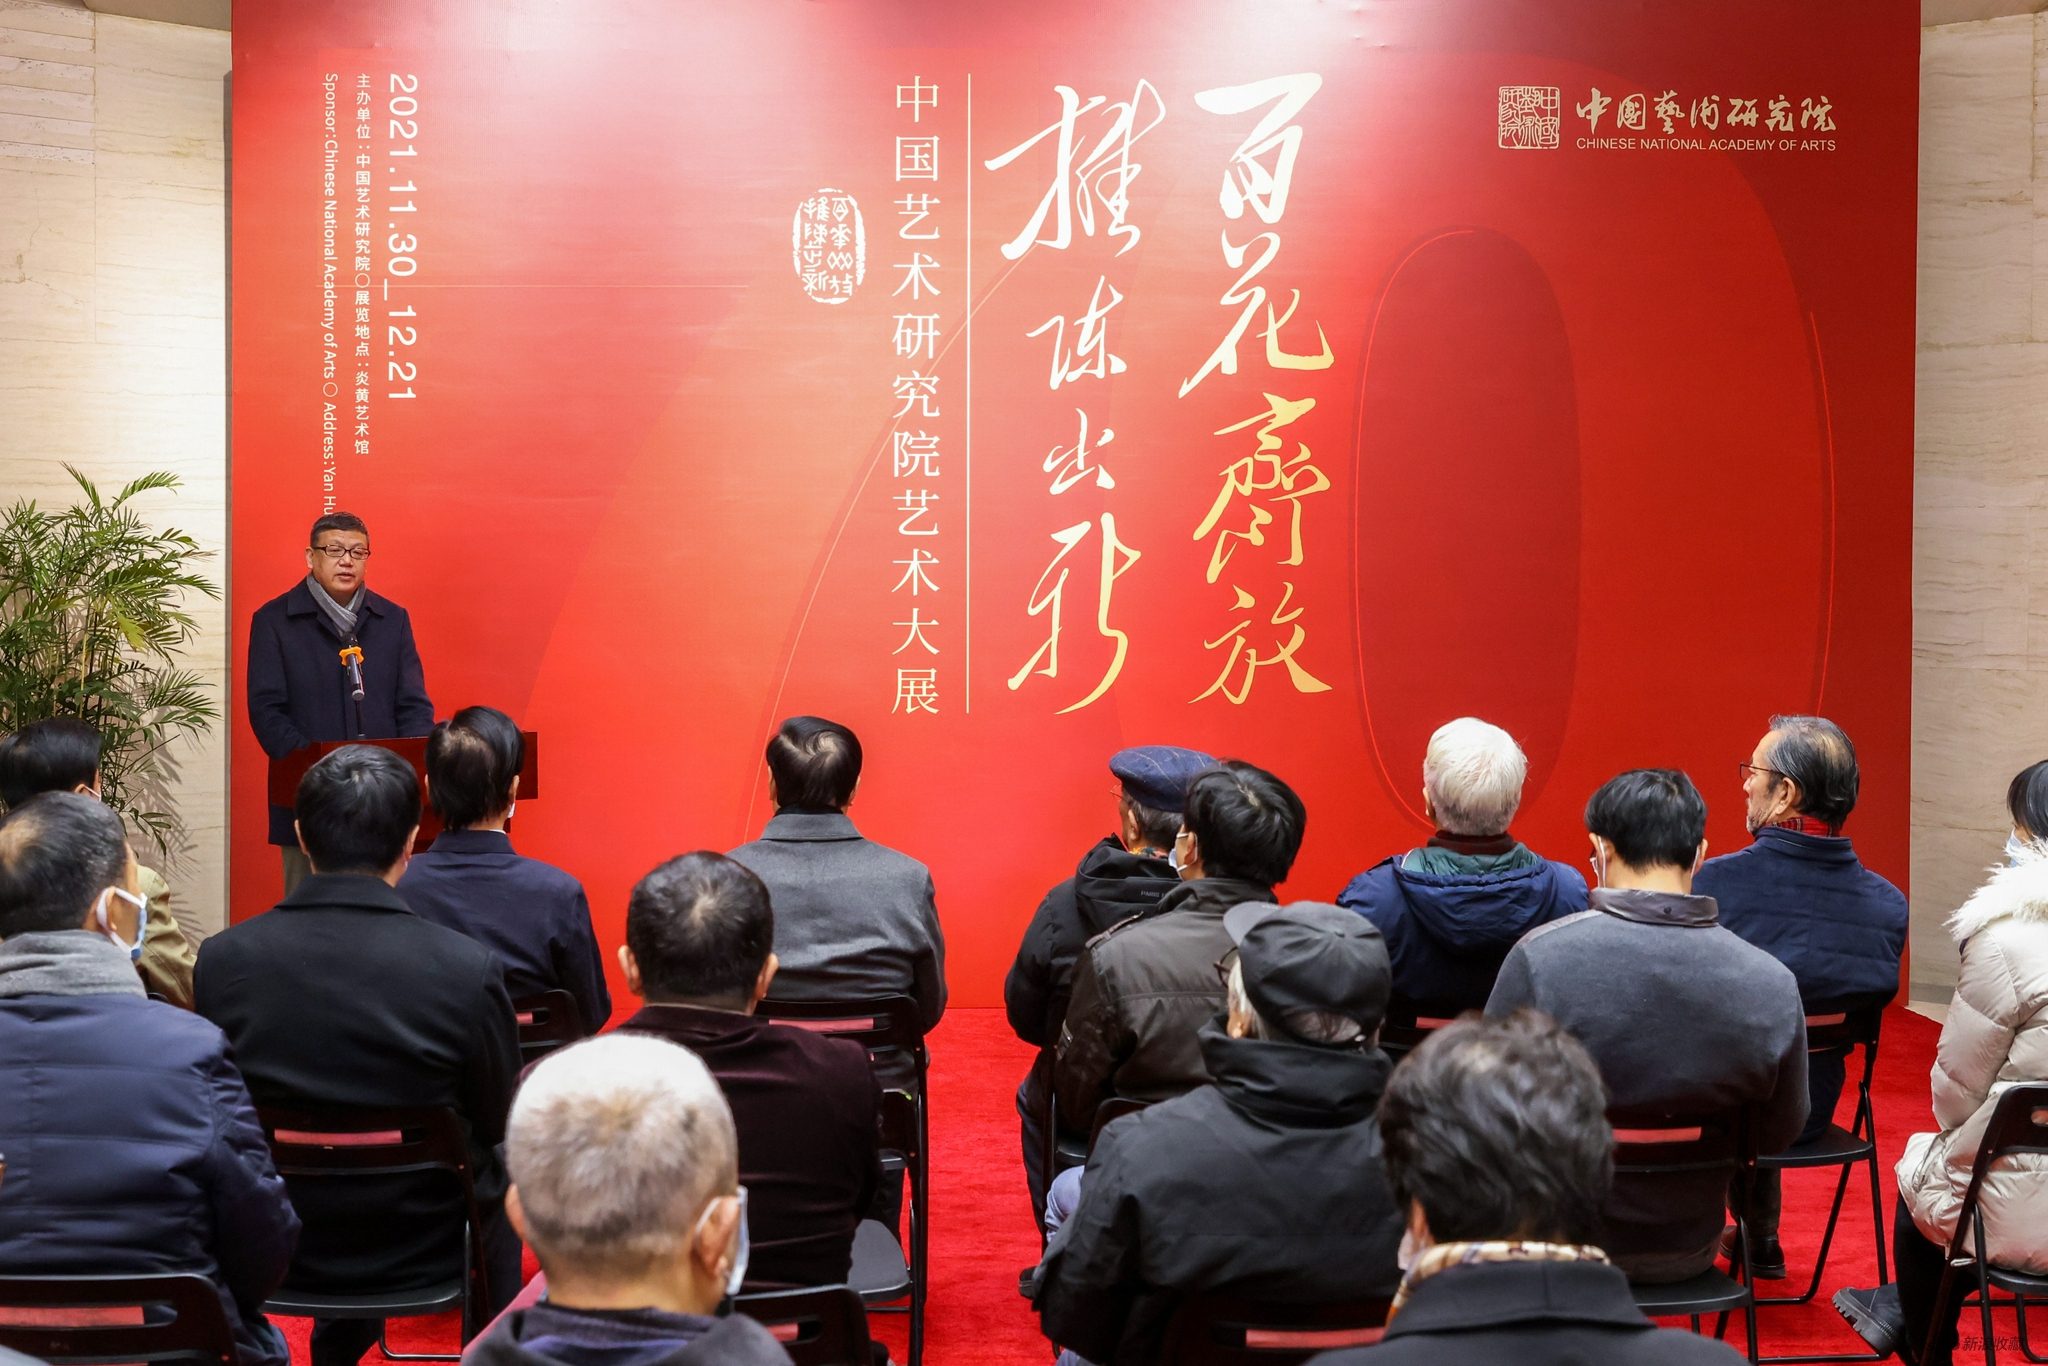 中国艺术研究院副院长祝东力主持开幕式